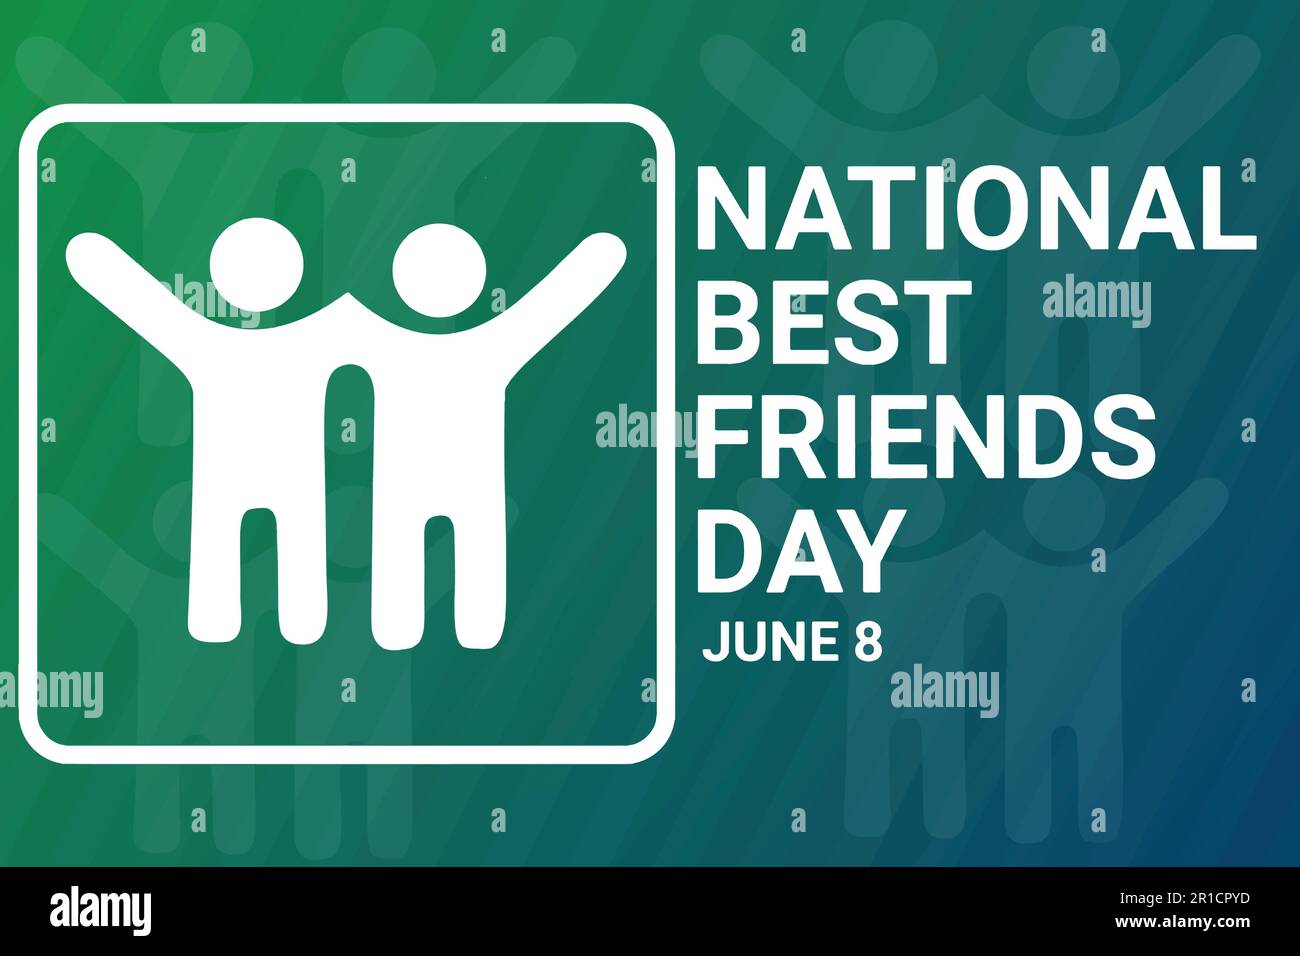 Typografie-Poster zum National Best Friends Day mit Silhouetten auf grünem Hintergrund. Juni 8. Vektordarstellung Stock Vektor